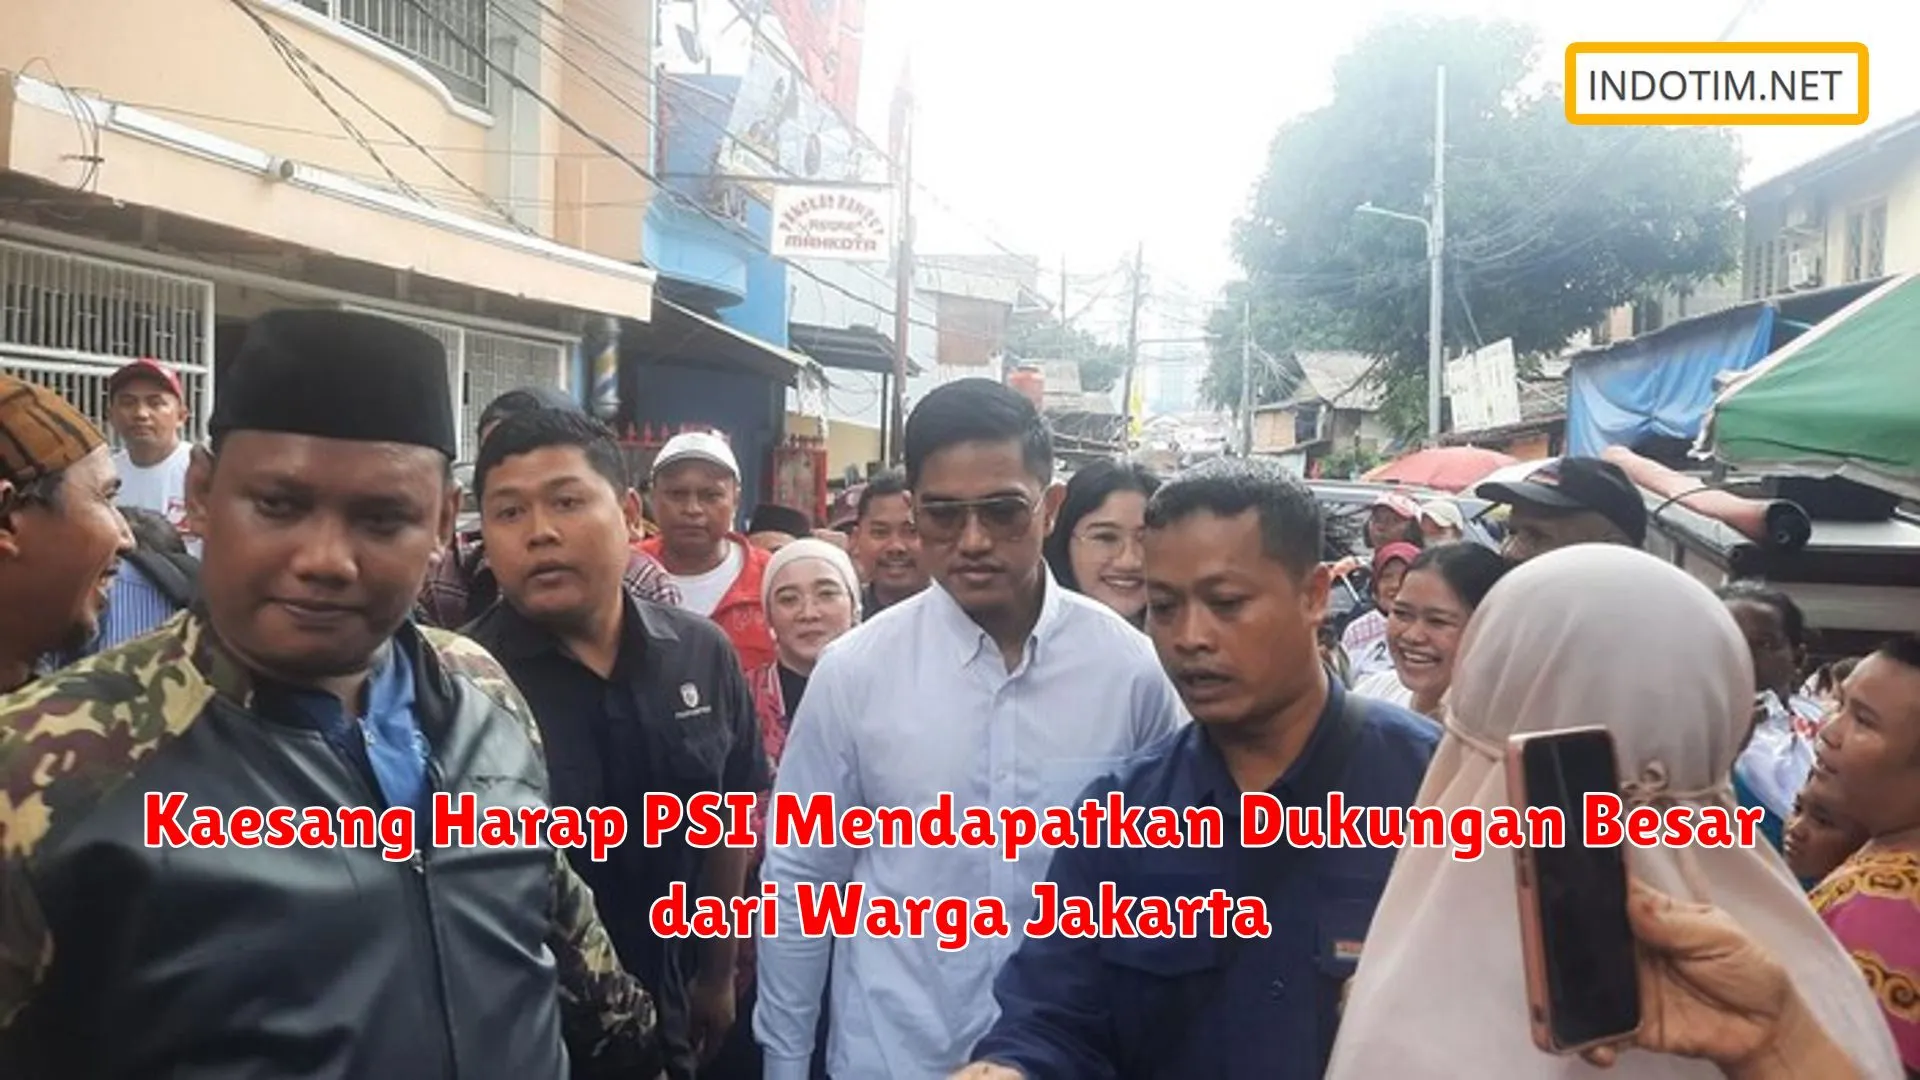 Kaesang Harap PSI Mendapatkan Dukungan Besar dari Warga Jakarta